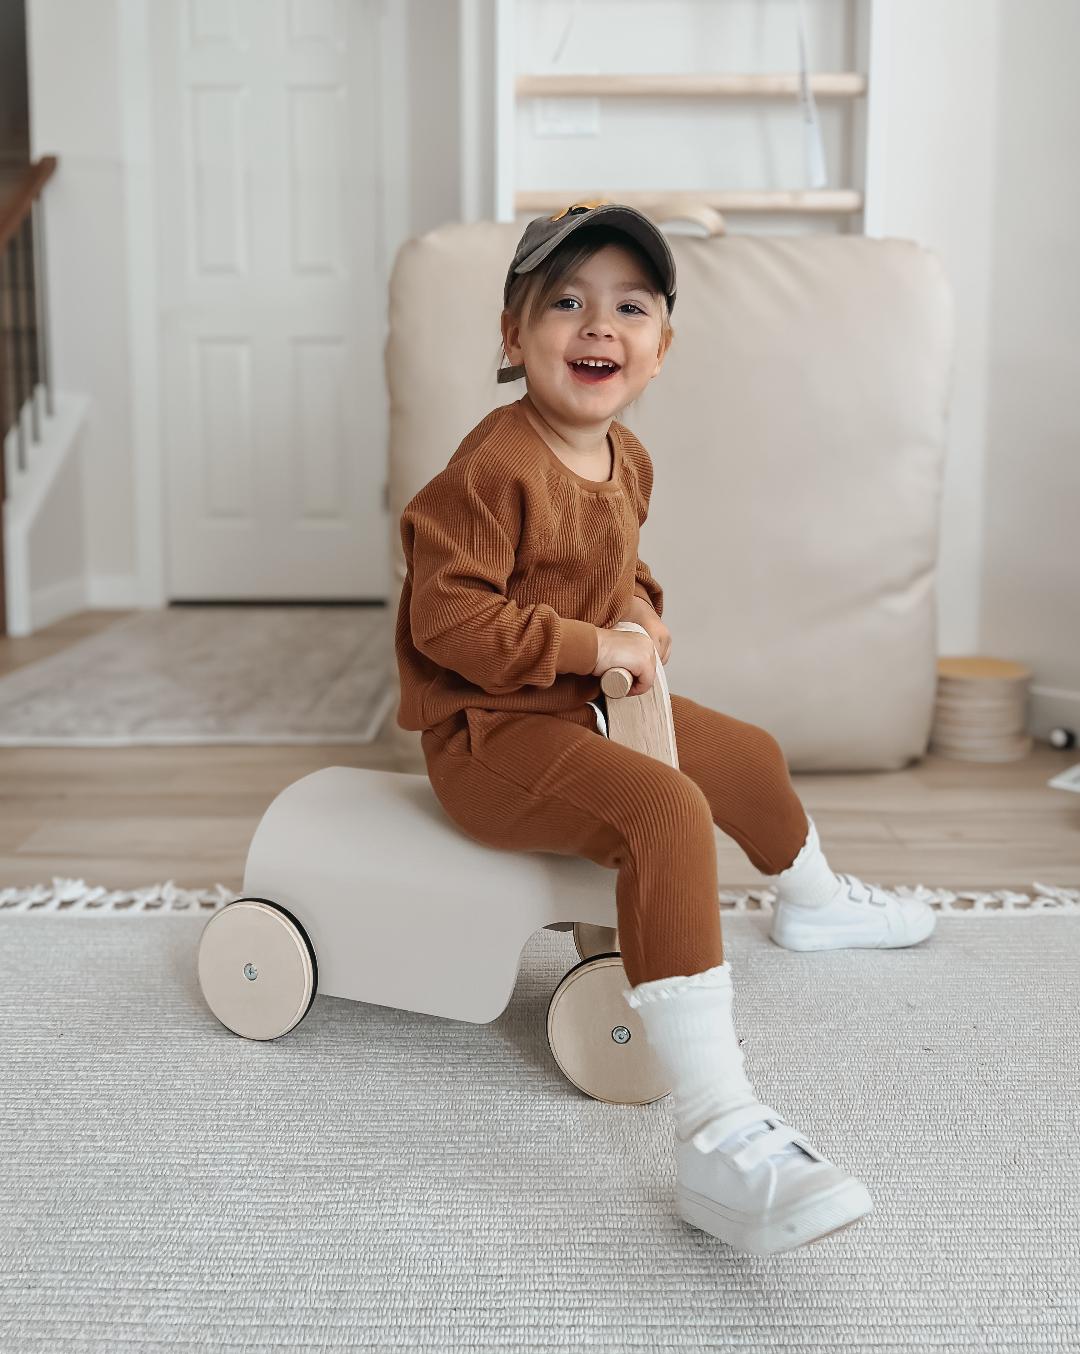 Children's Four-wheel Baby Walker Riding Toy